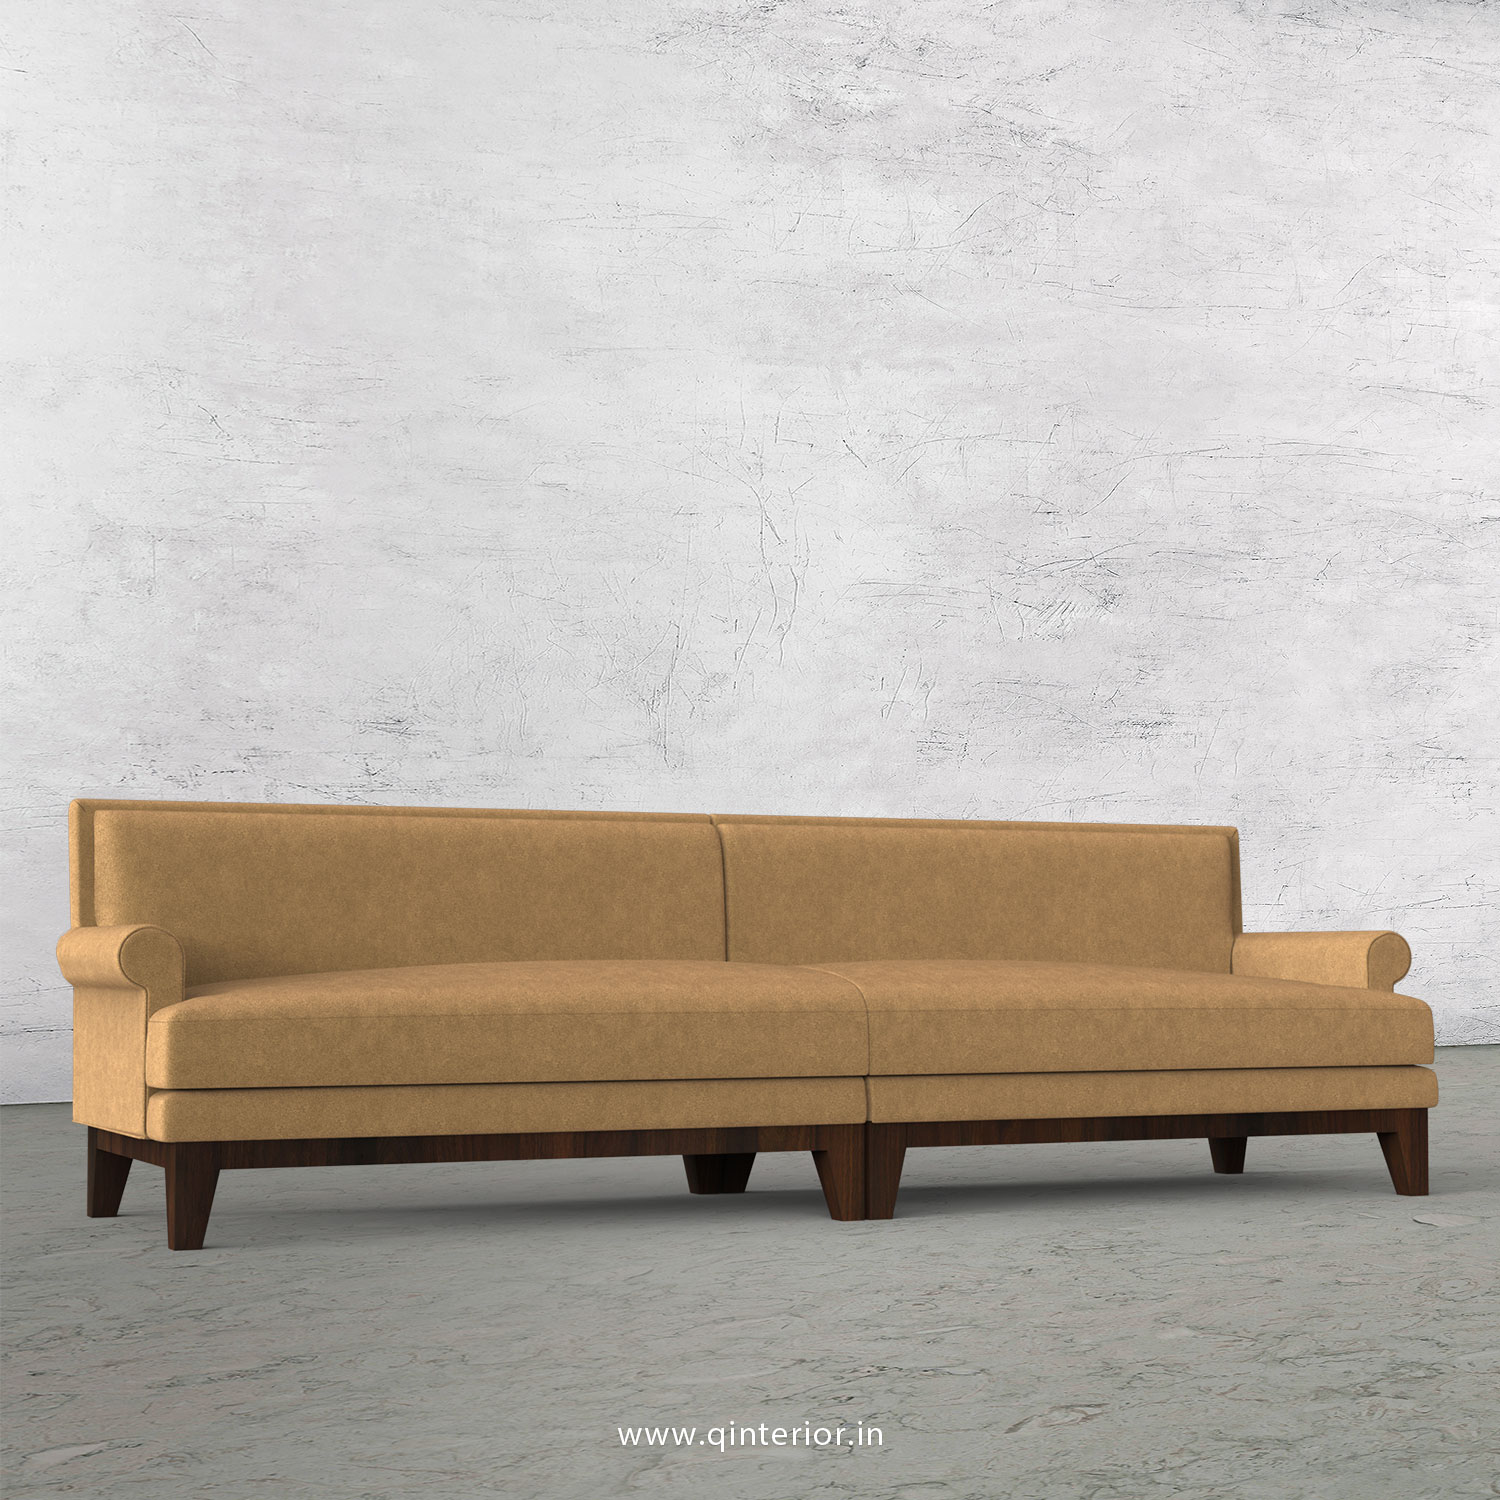 Aviana 4 Seater Sofa in Velvet Fabric - SFA001 VL09